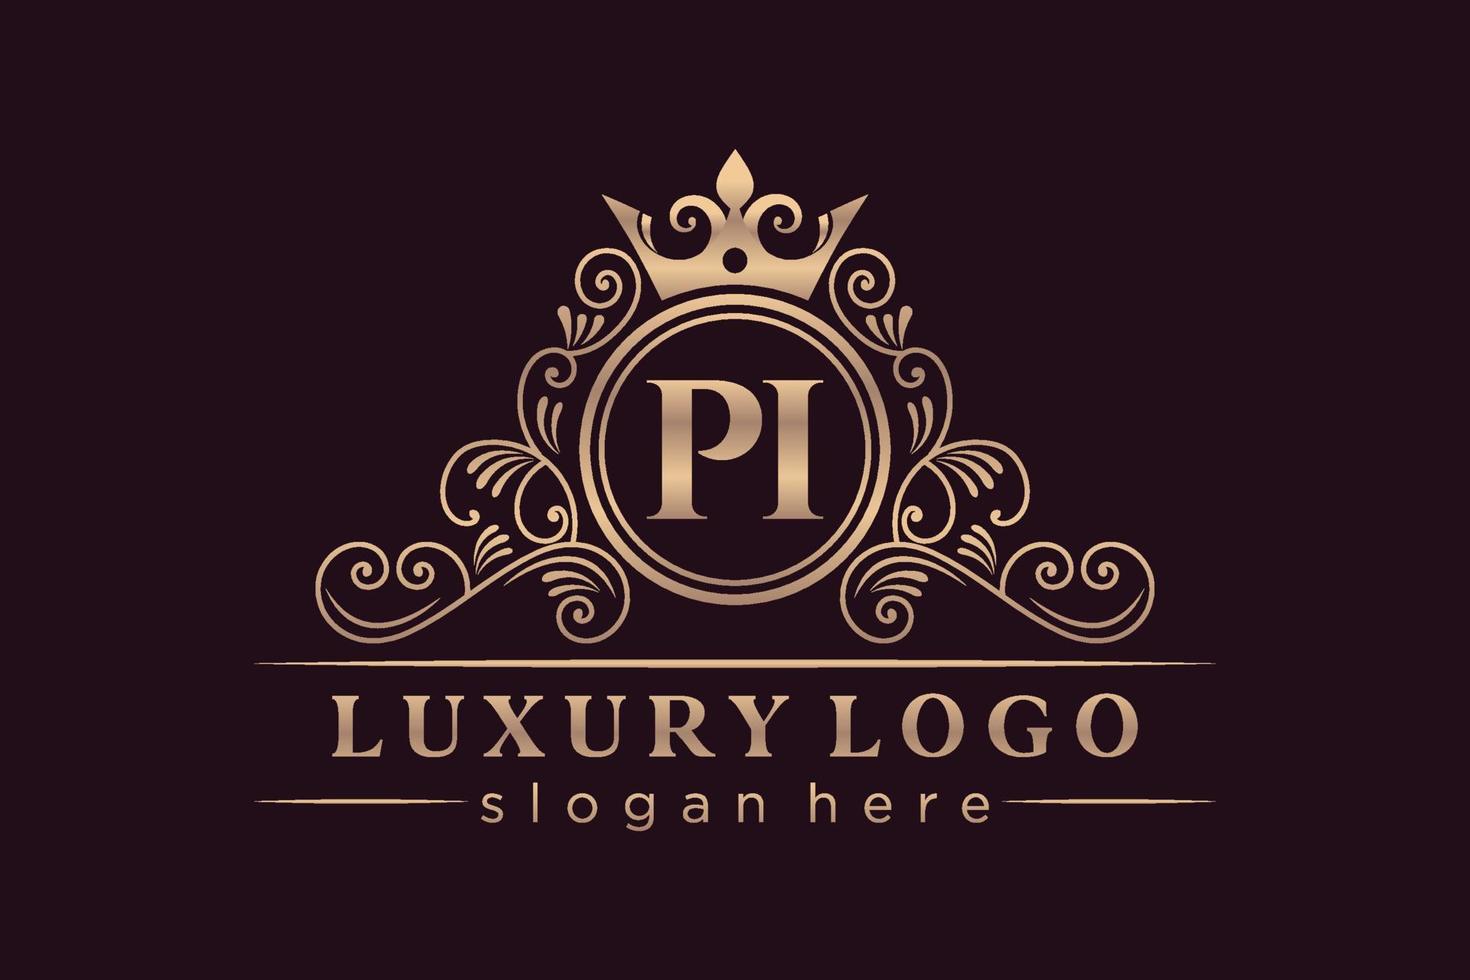 PI Initial Letter Gold calligraphic feminine floral hand drawn heraldic monogram antique vintage style luxury logo design Premium Vector